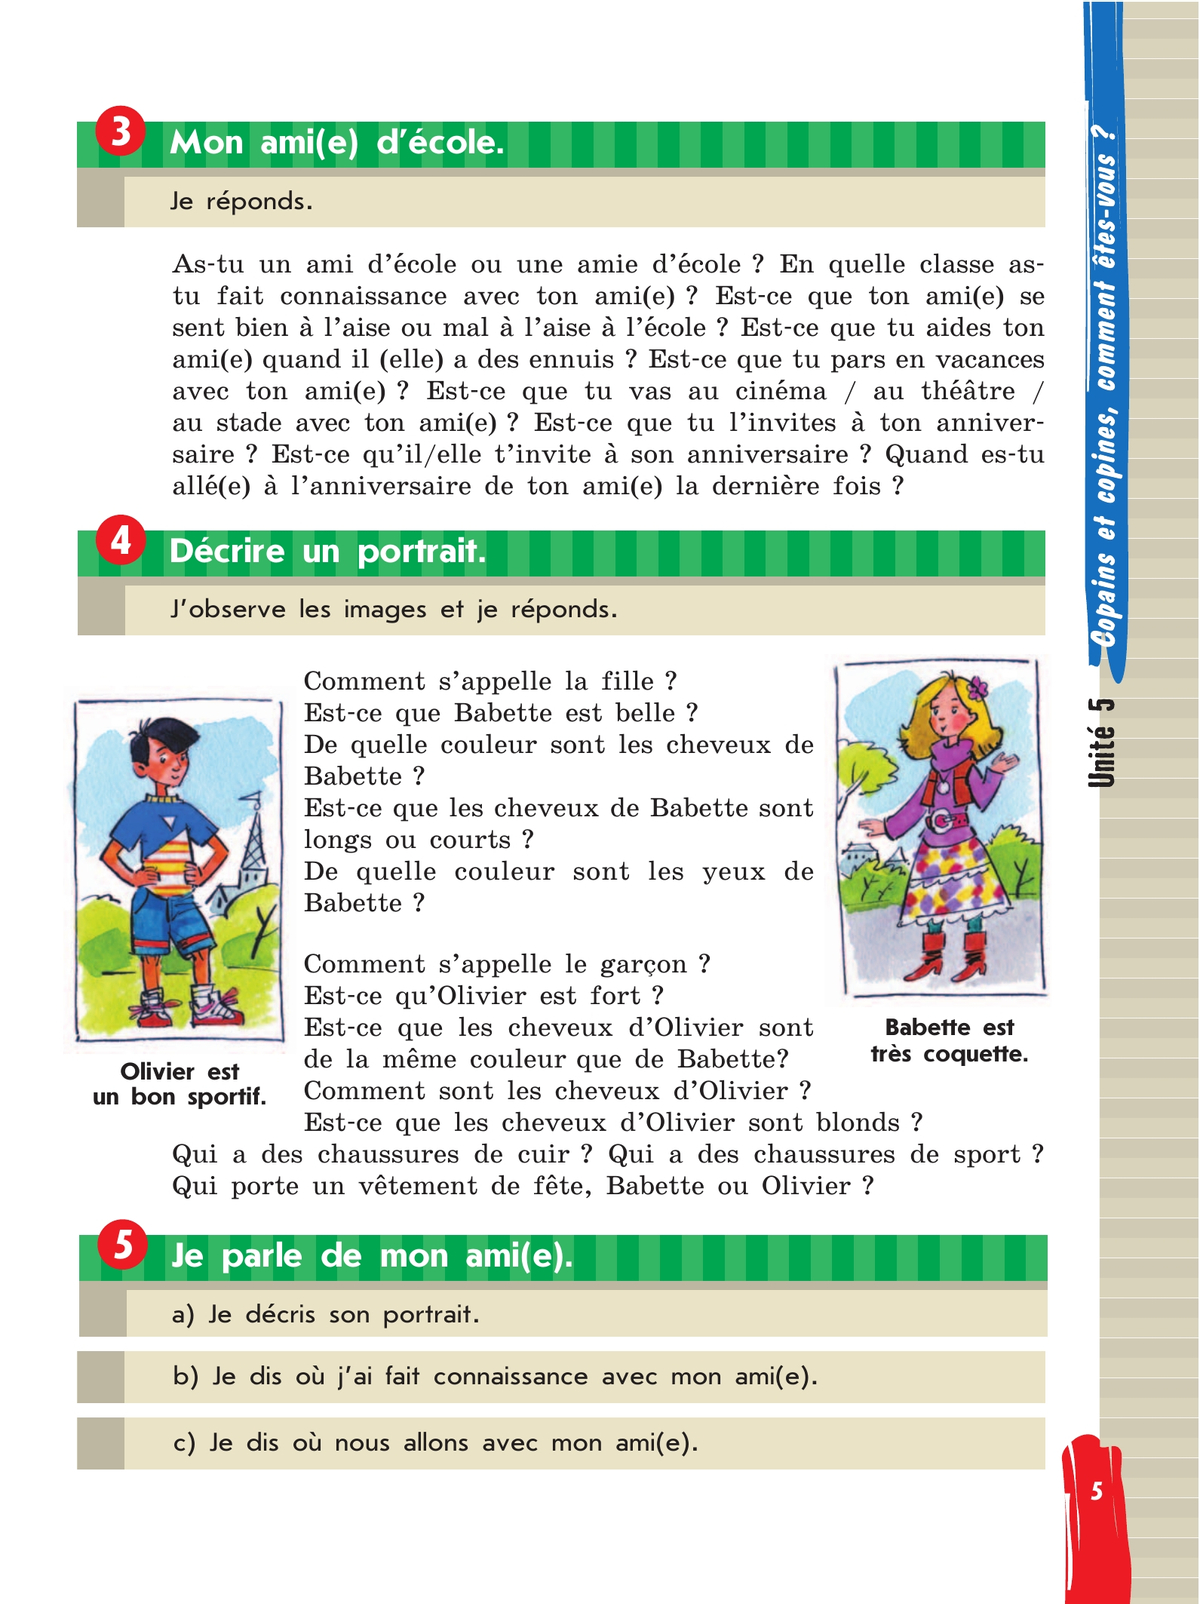 Французский язык. 5 класс. Учебник. В 2 ч. Часть 2 4